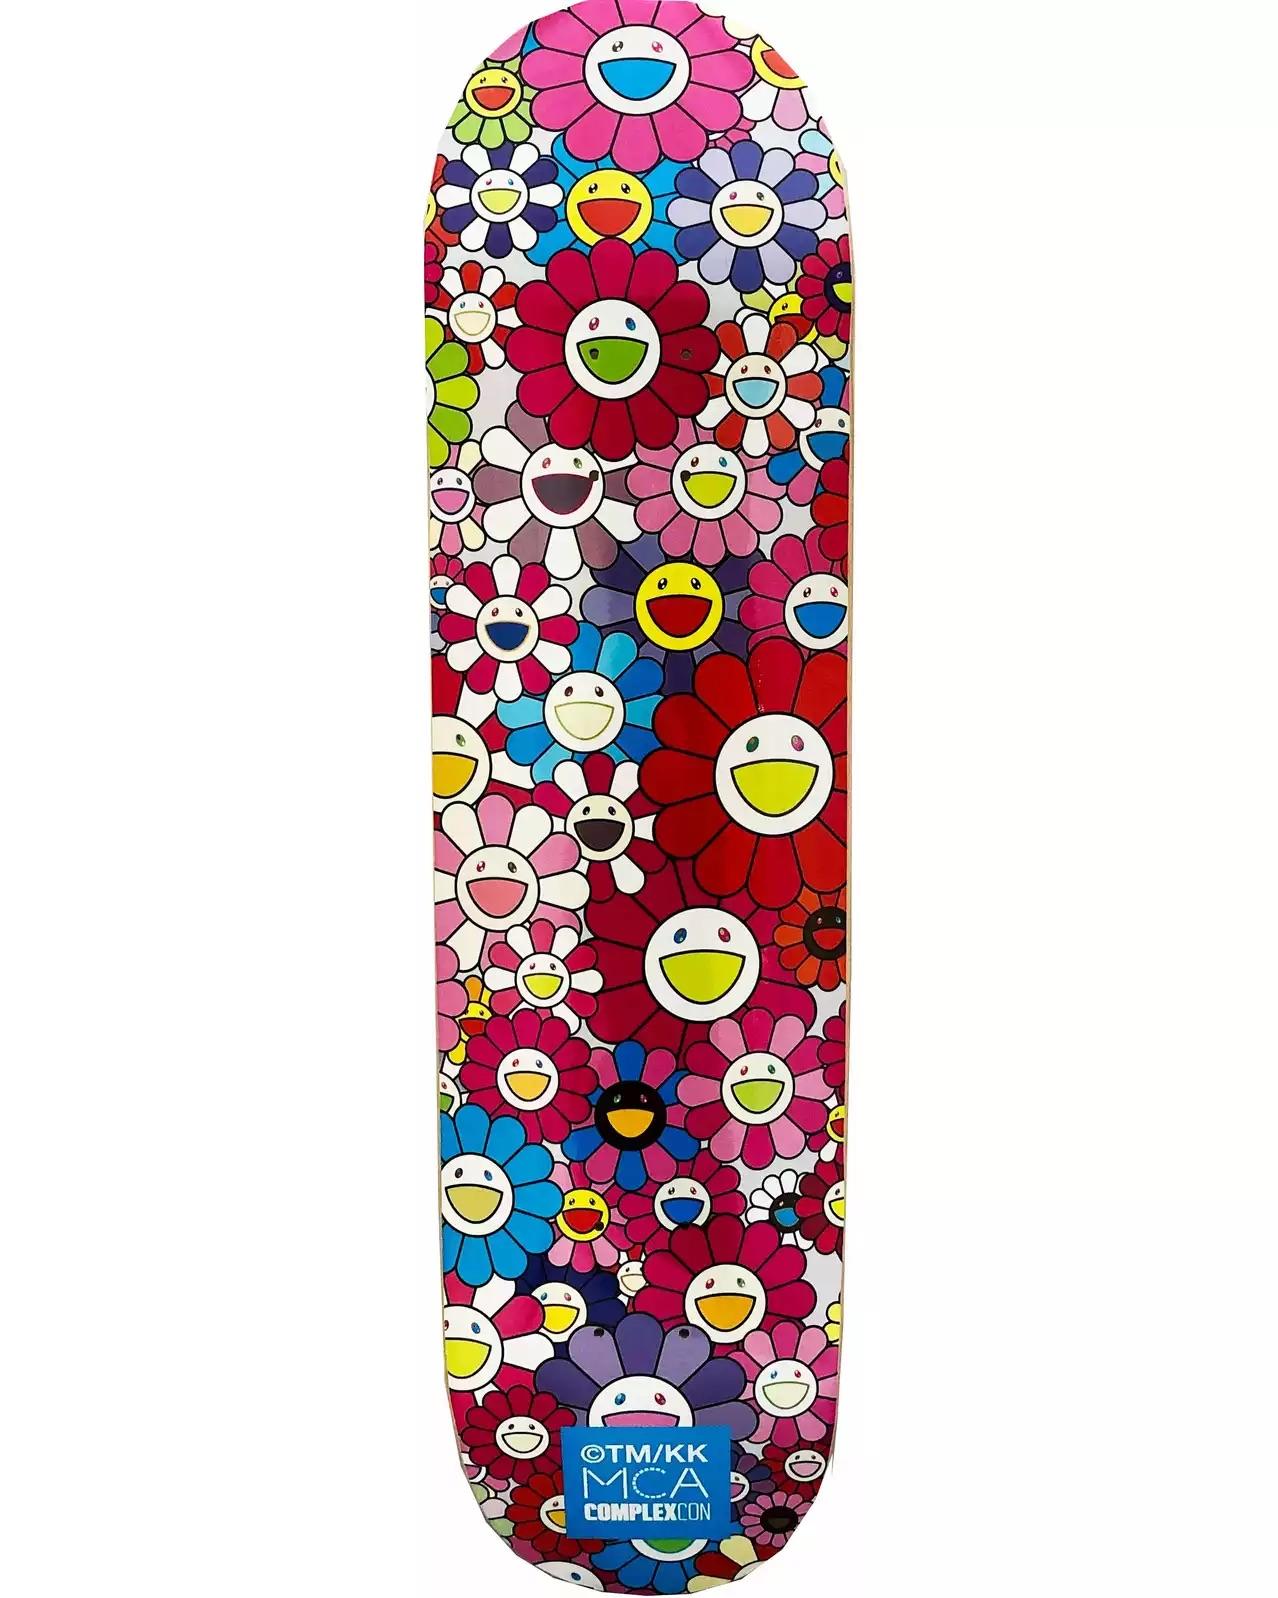 Takashi Murakami Blumen Skate Deck:
Ein lebhaftes Wandkunstwerk von Takashi Murakami, das in einer limitierten Serie in Verbindung mit der Murakami-Ausstellung 2017 produziert wurde: The Octopus Eats Its Own Leg, MCA Chicago. Dieses Deck ist neu in